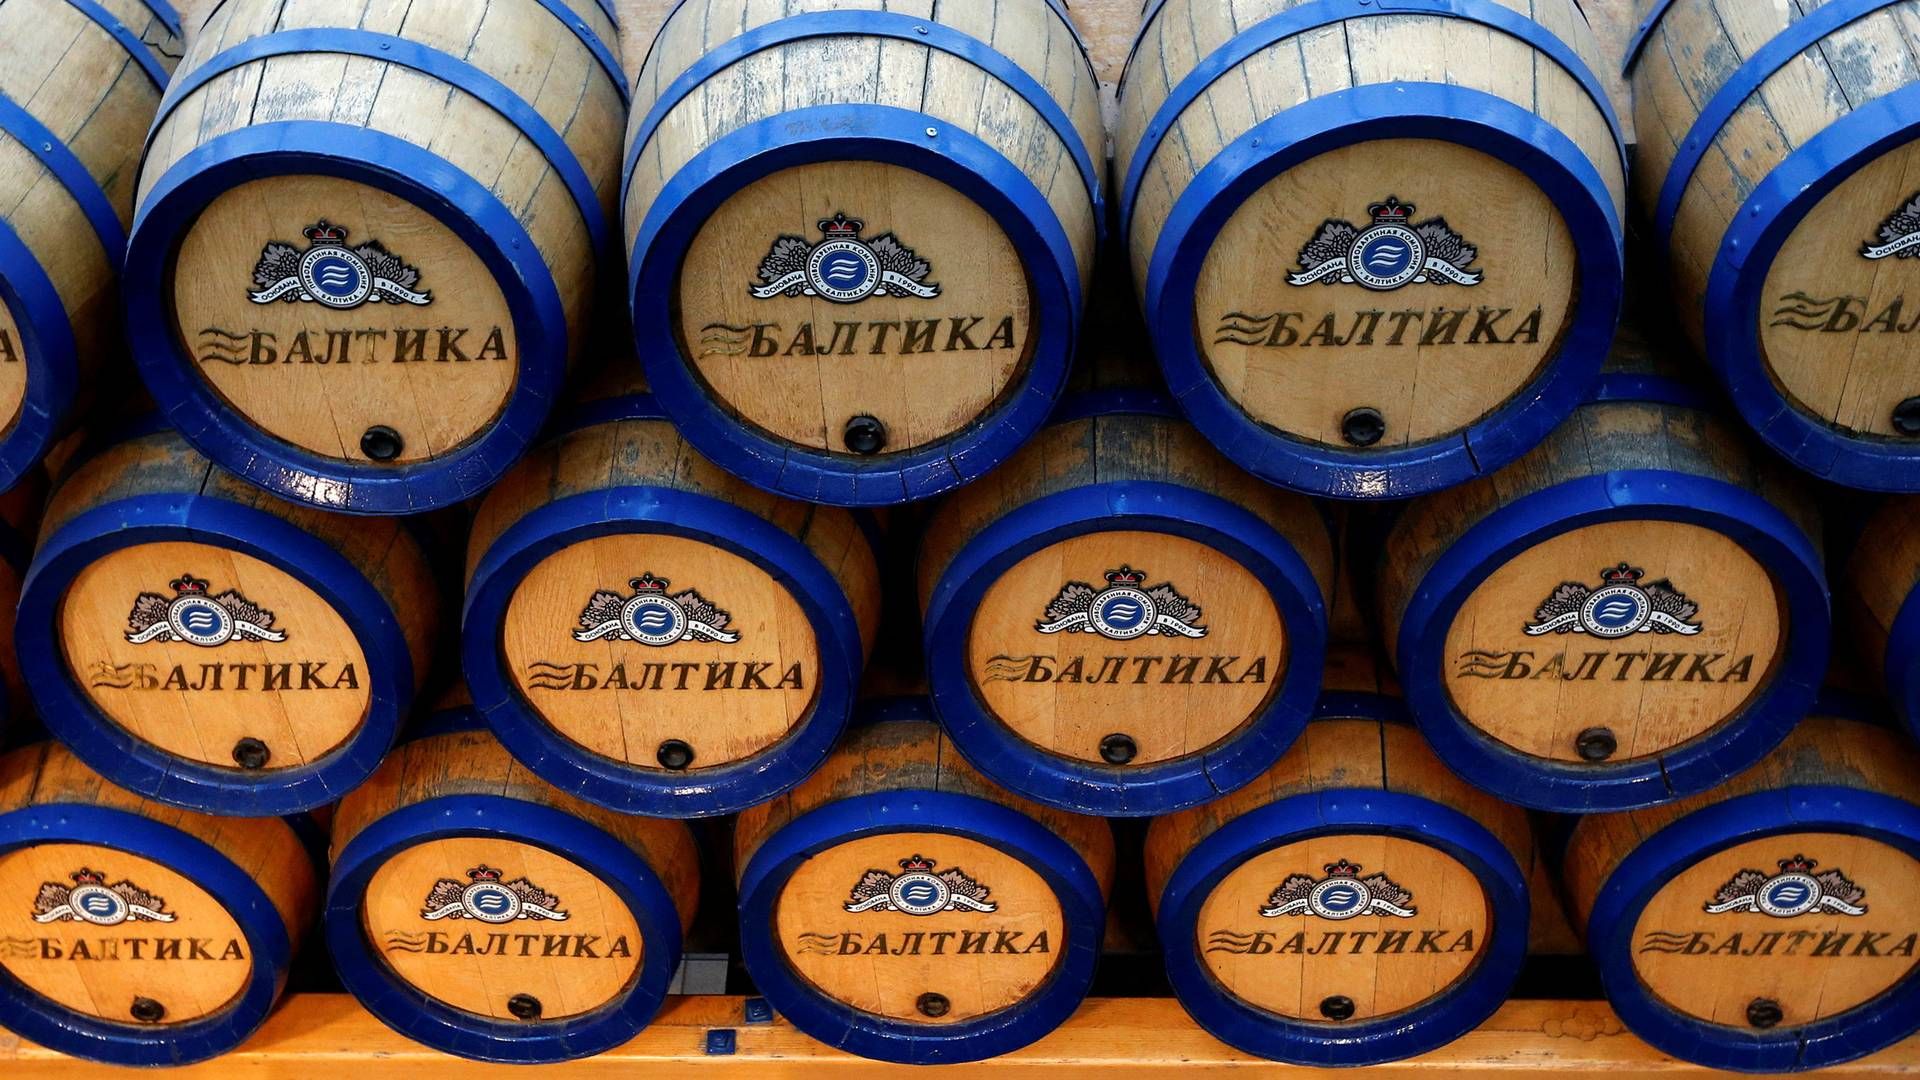 Fire datterselskaber i Carlsberg sagsøges for samlet 6,24 mia. kr. af Baltika Breweries, viser russiske dokumenter. Foto: Alexander Demianchuk/Reuters/Ritzau Scanpix